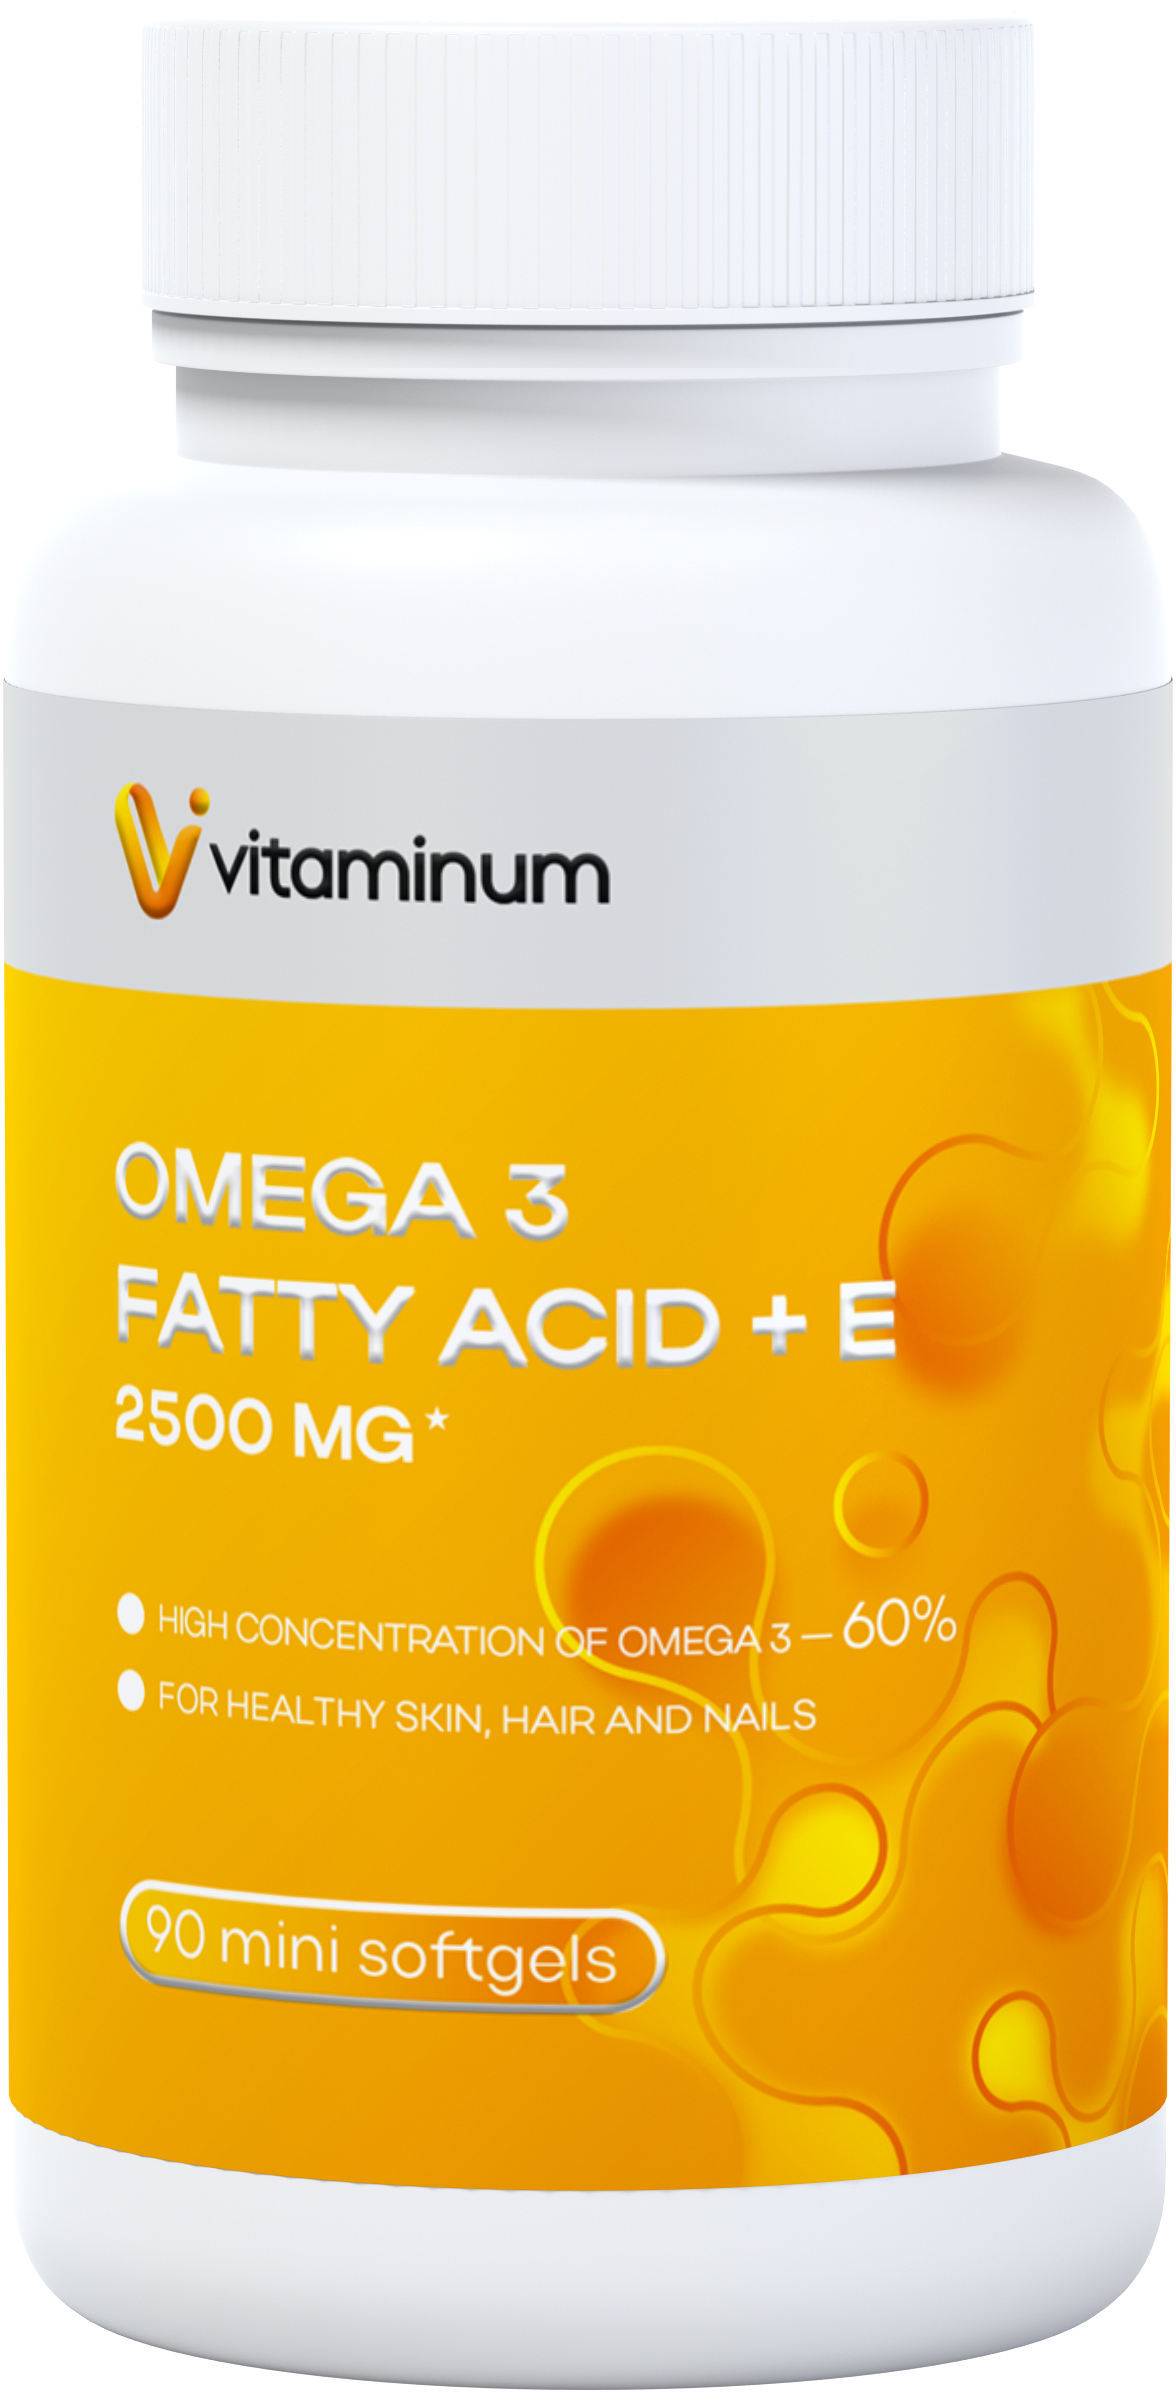  Vitaminum ОМЕГА 3 60% + витамин Е (2500 MG*) 90 капсул 700 мг   в Кандалакше